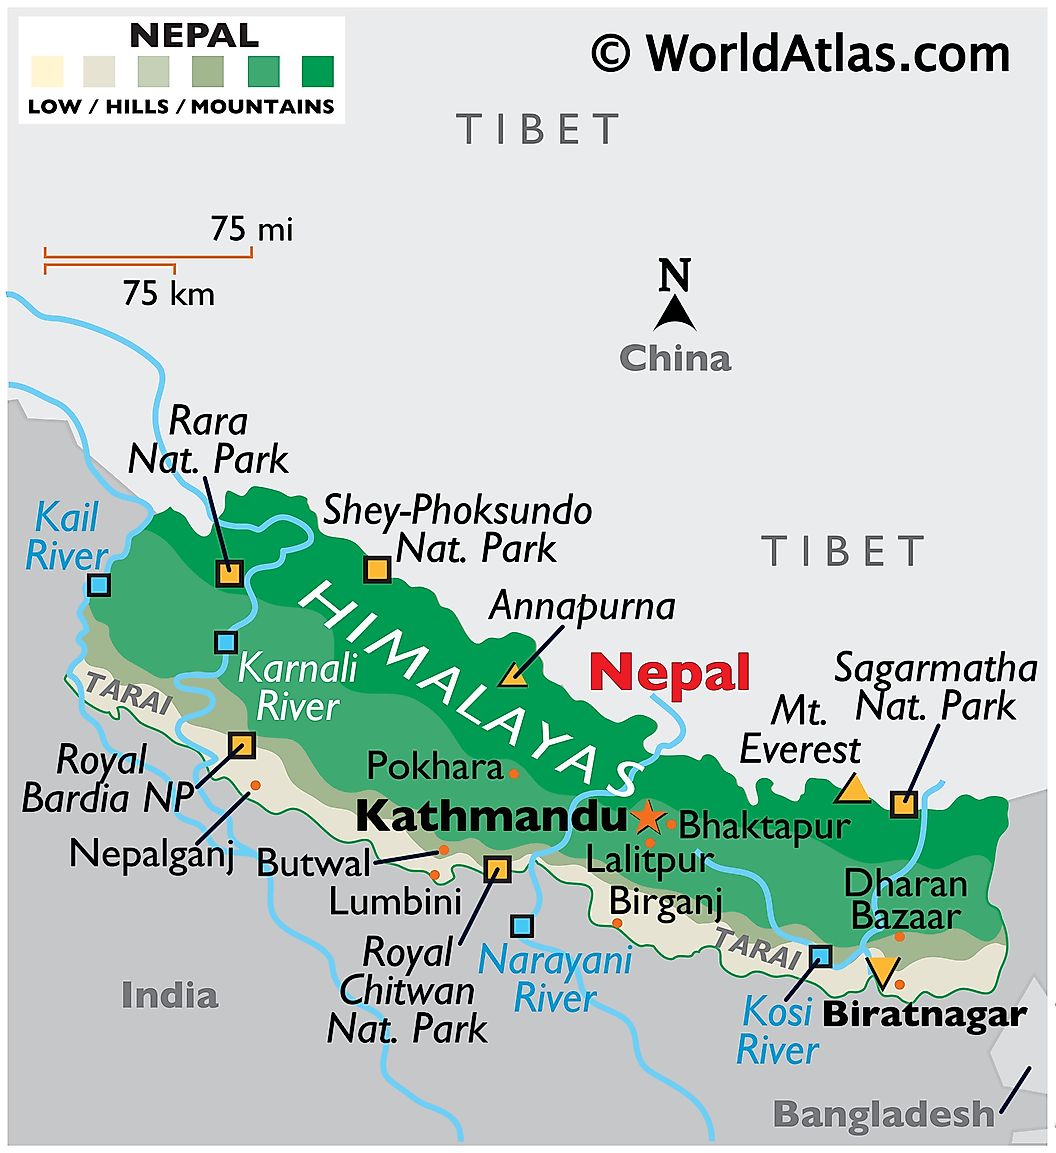 10113237 5 nepal map